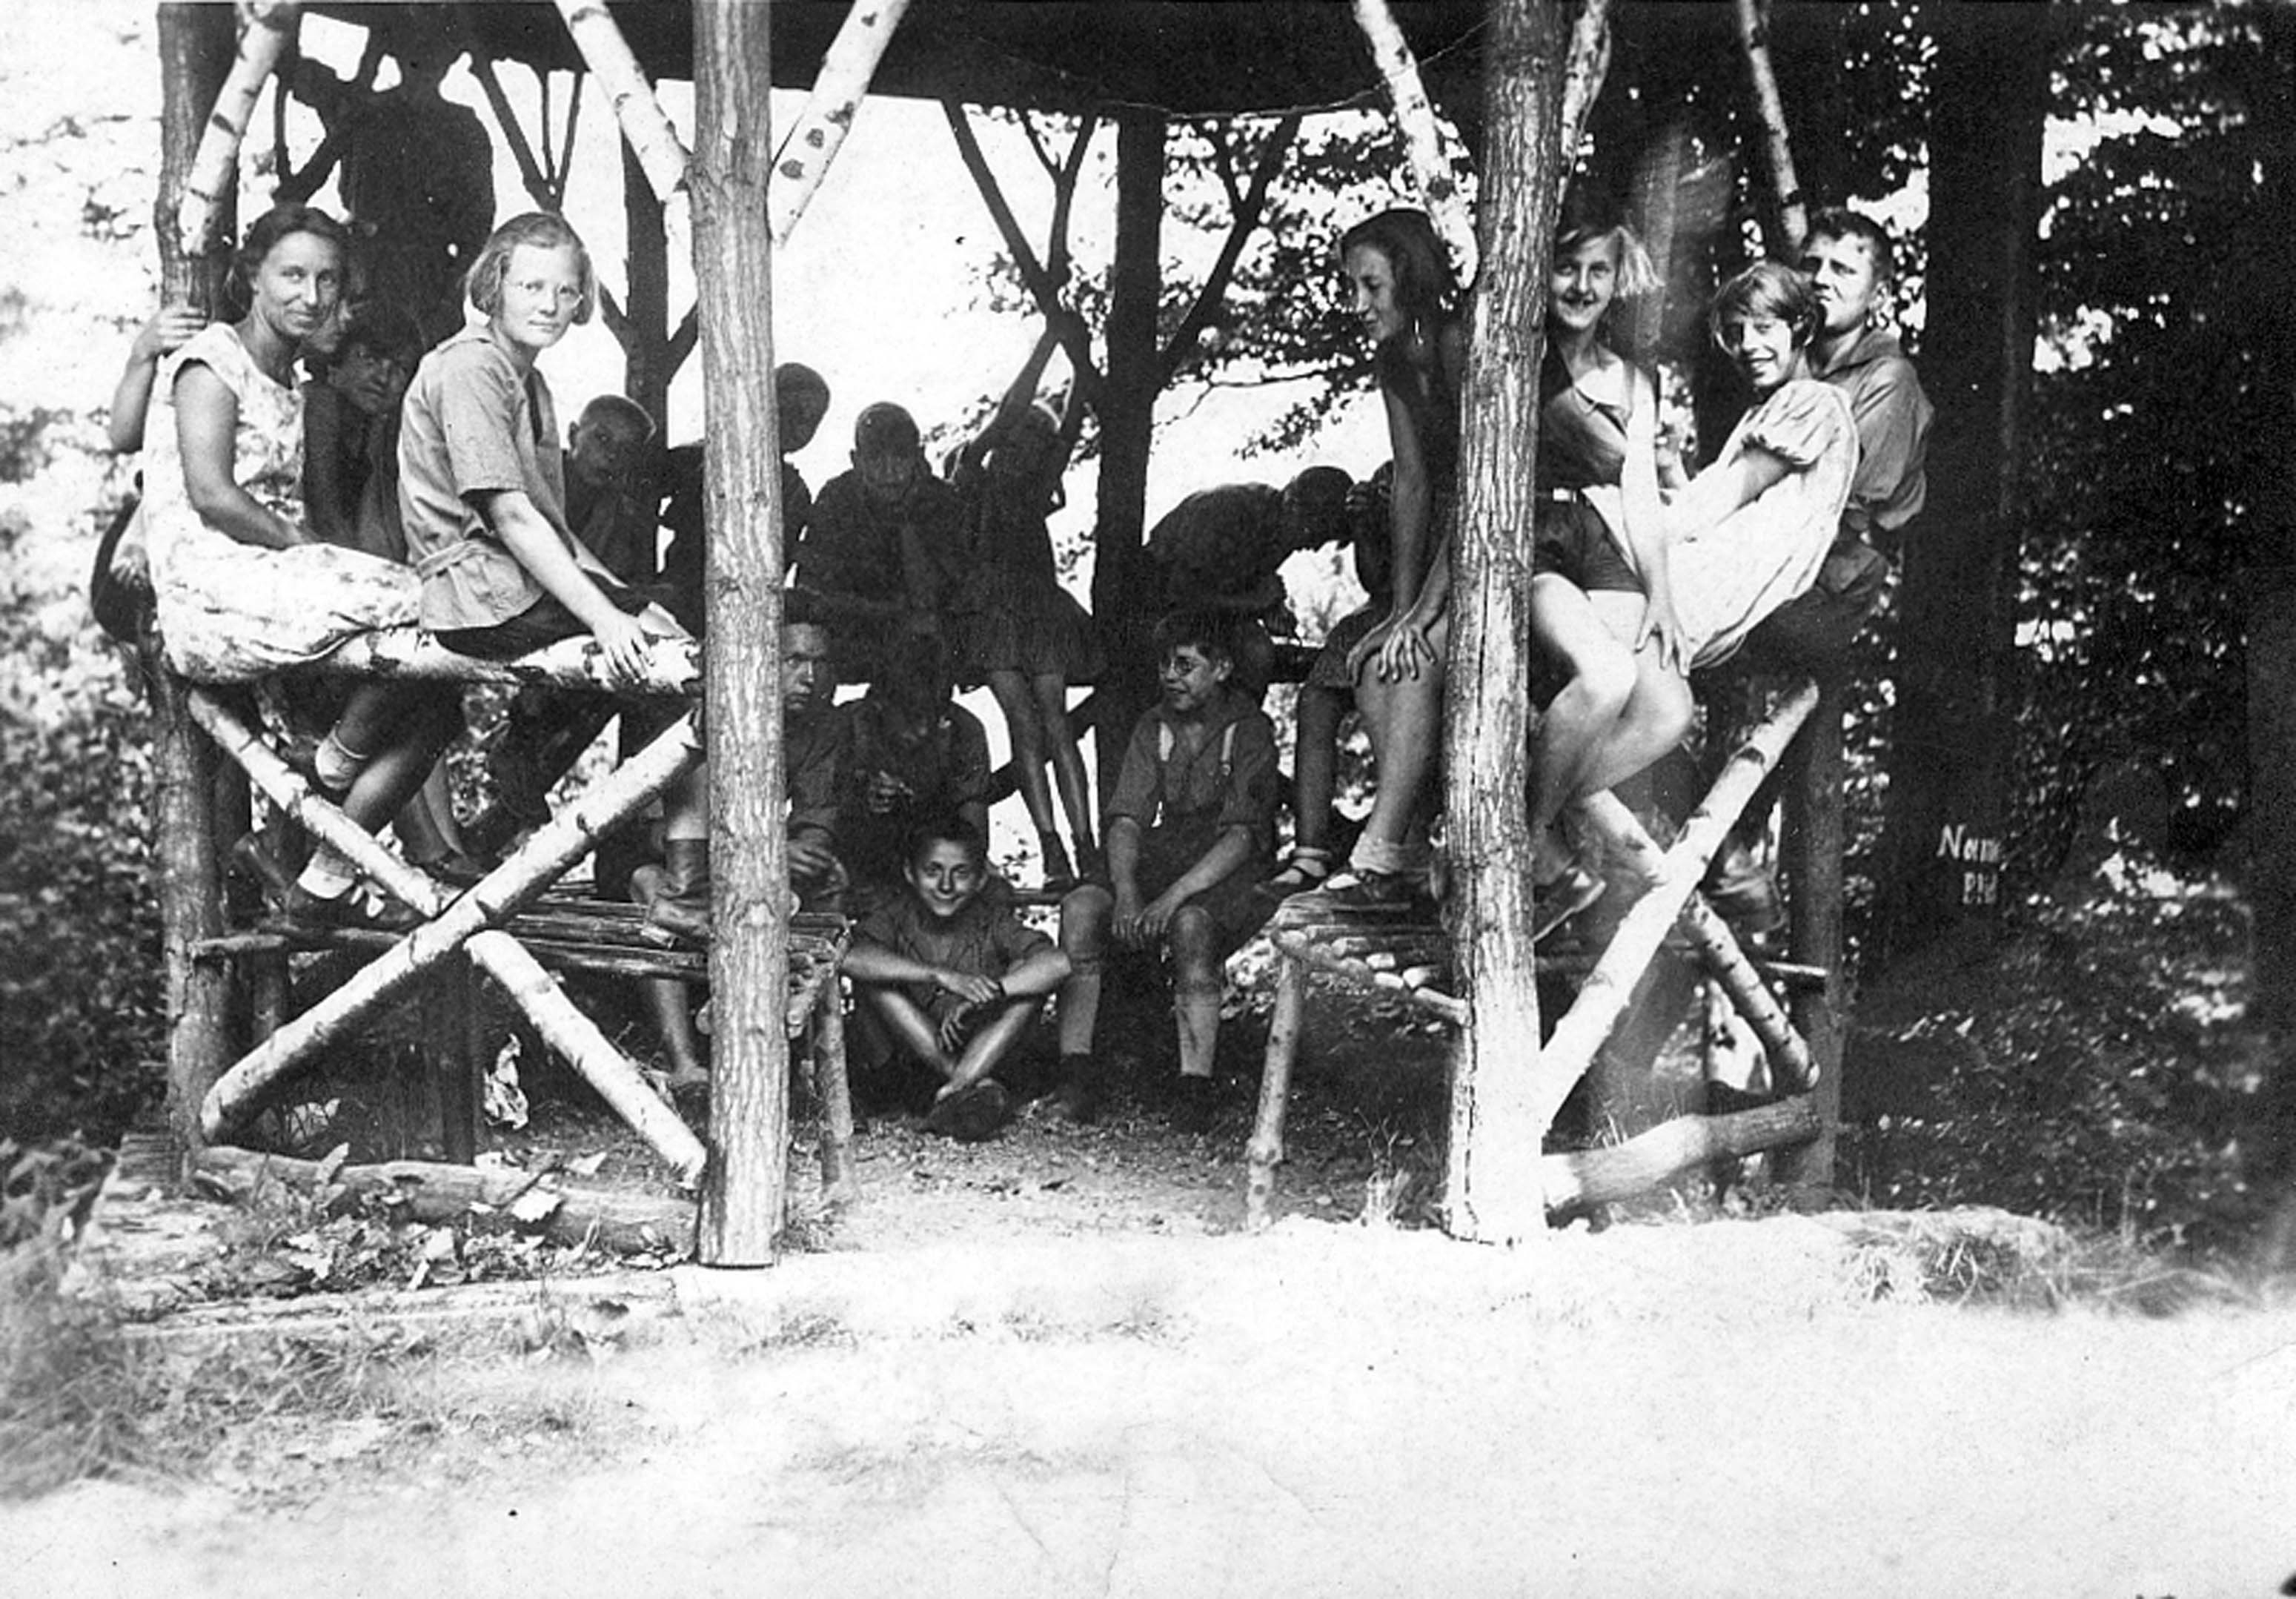 Schwarz-Weiß-Fotografie einer Kindergruppe in einem aus schmalen Baumstämmen gebauten Unterstand während der Kinderrepublik Namedy zwischen 1929 bis 1931. AdsD 6/FOTB016115.